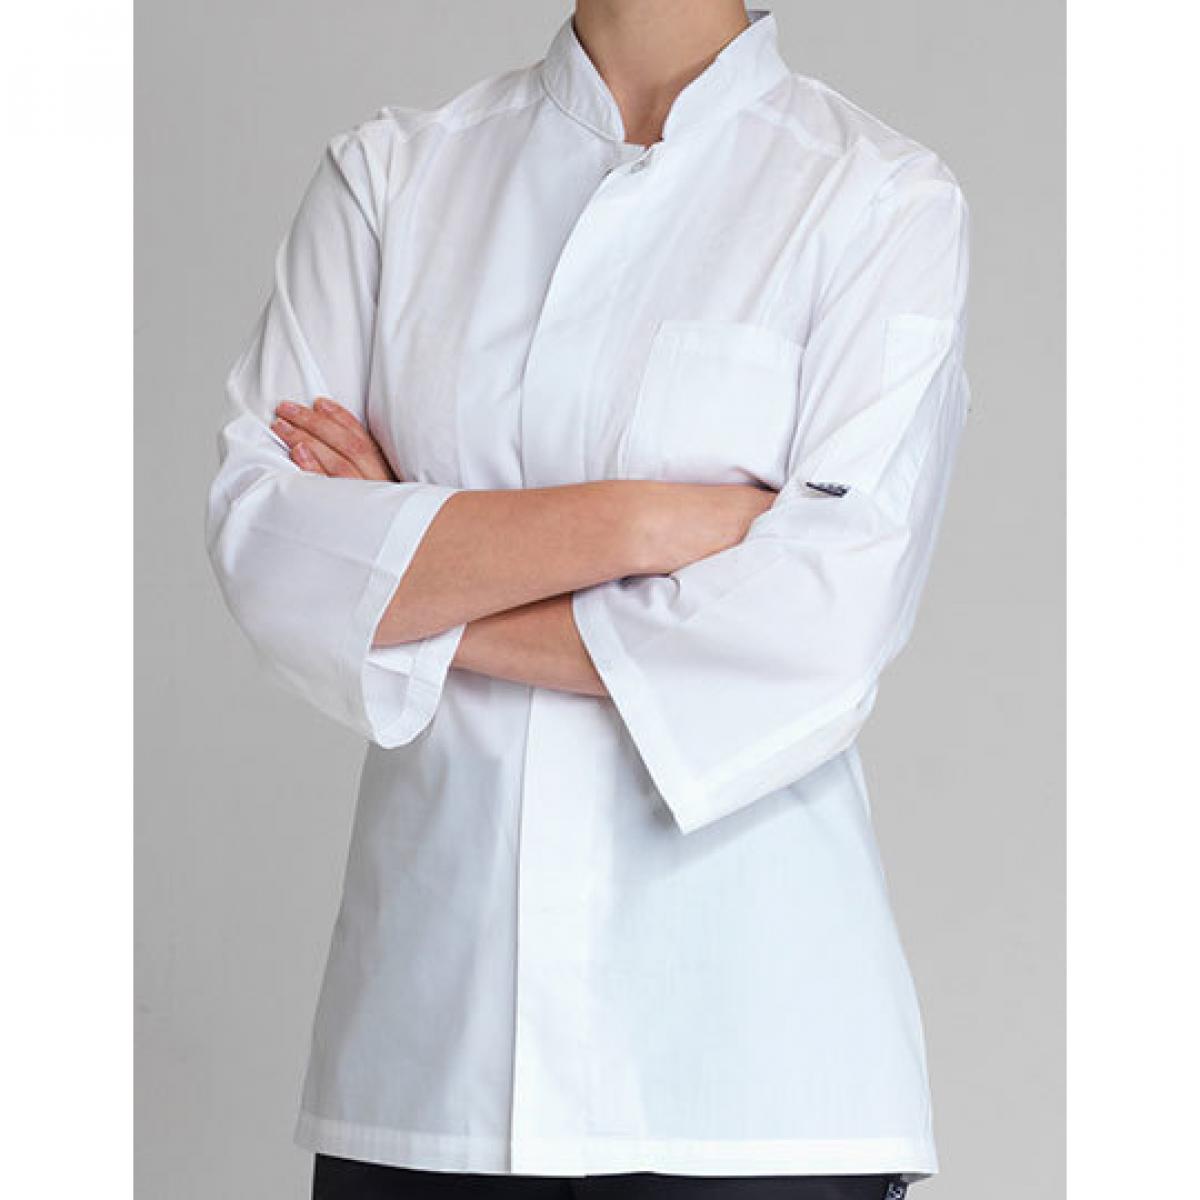 Hersteller: Le Chef Prep Herstellernummer: DF120F Artikelbezeichnung: Koch-Kittel Ladies Prep Shirt Farbe: White